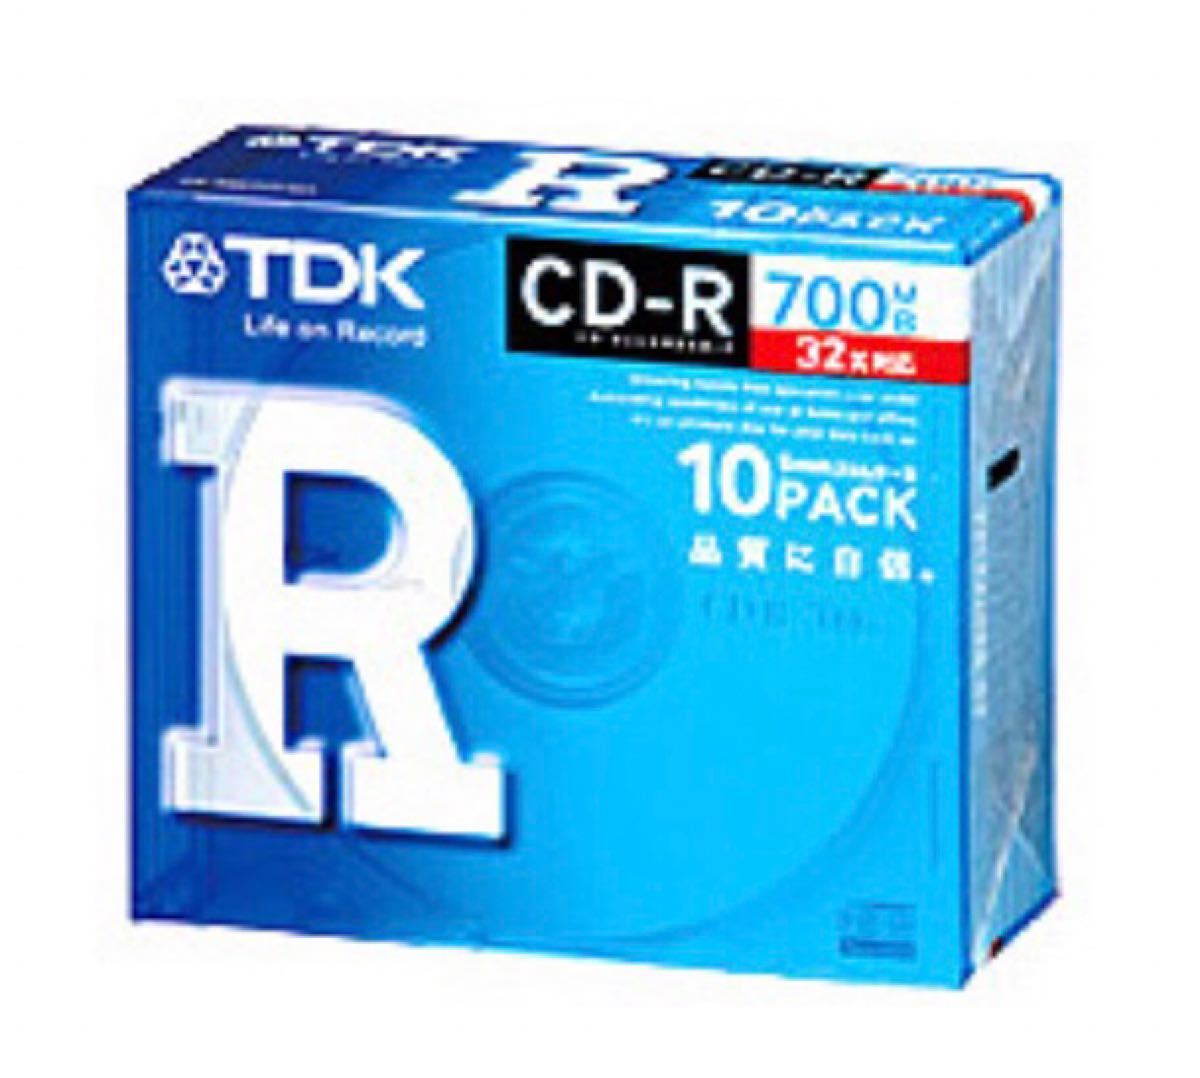 TDK データ記録用ディスク CD-R 700MB 32倍速対応 2枚